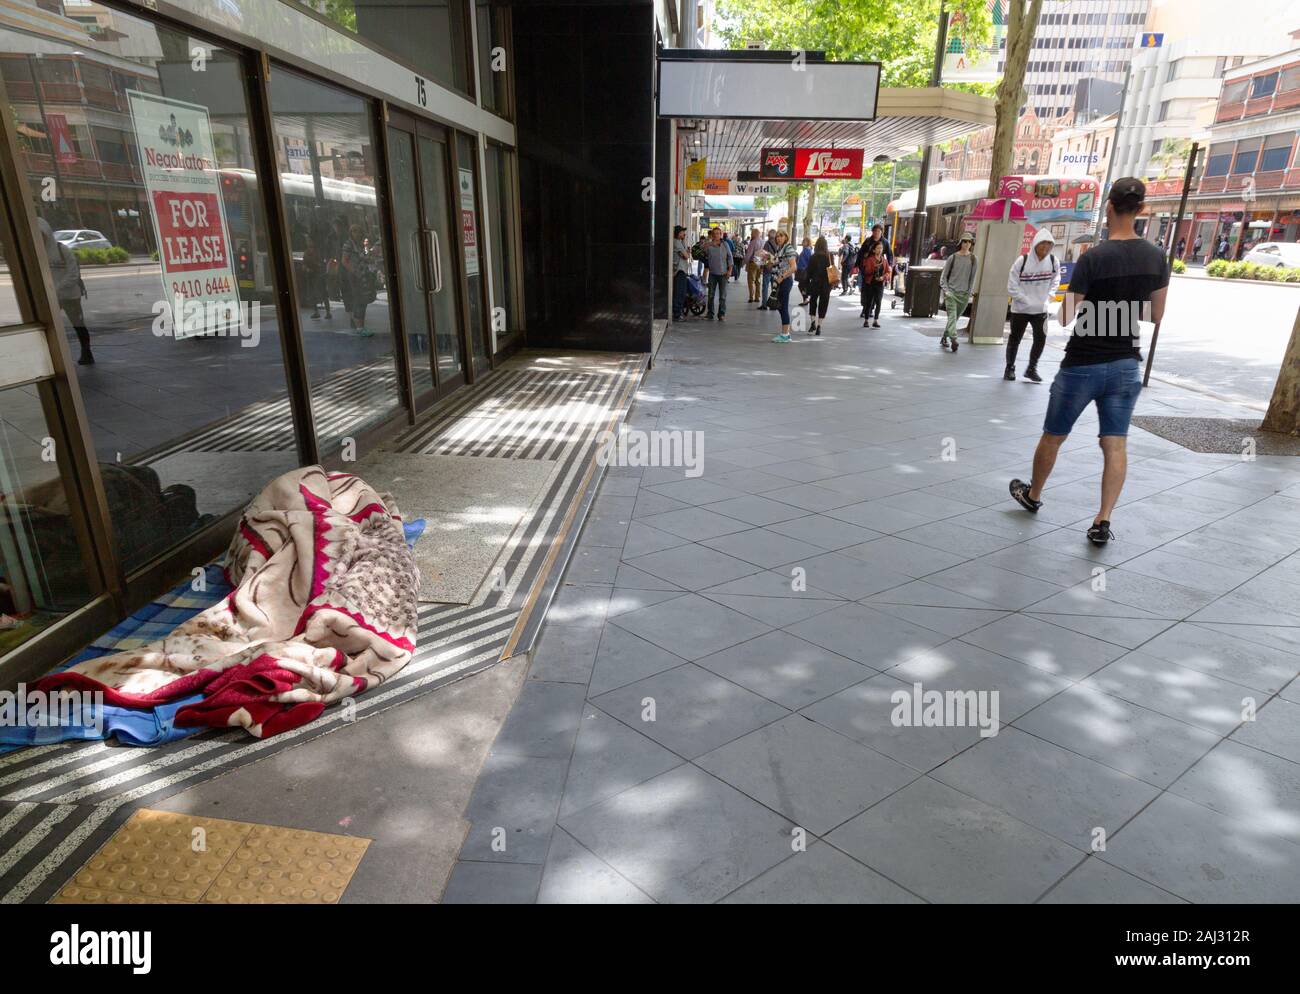 Australien Armut - eine obdachlose Person schlafen auf der Straße in Adelaide, South Australia Australien Stockfoto